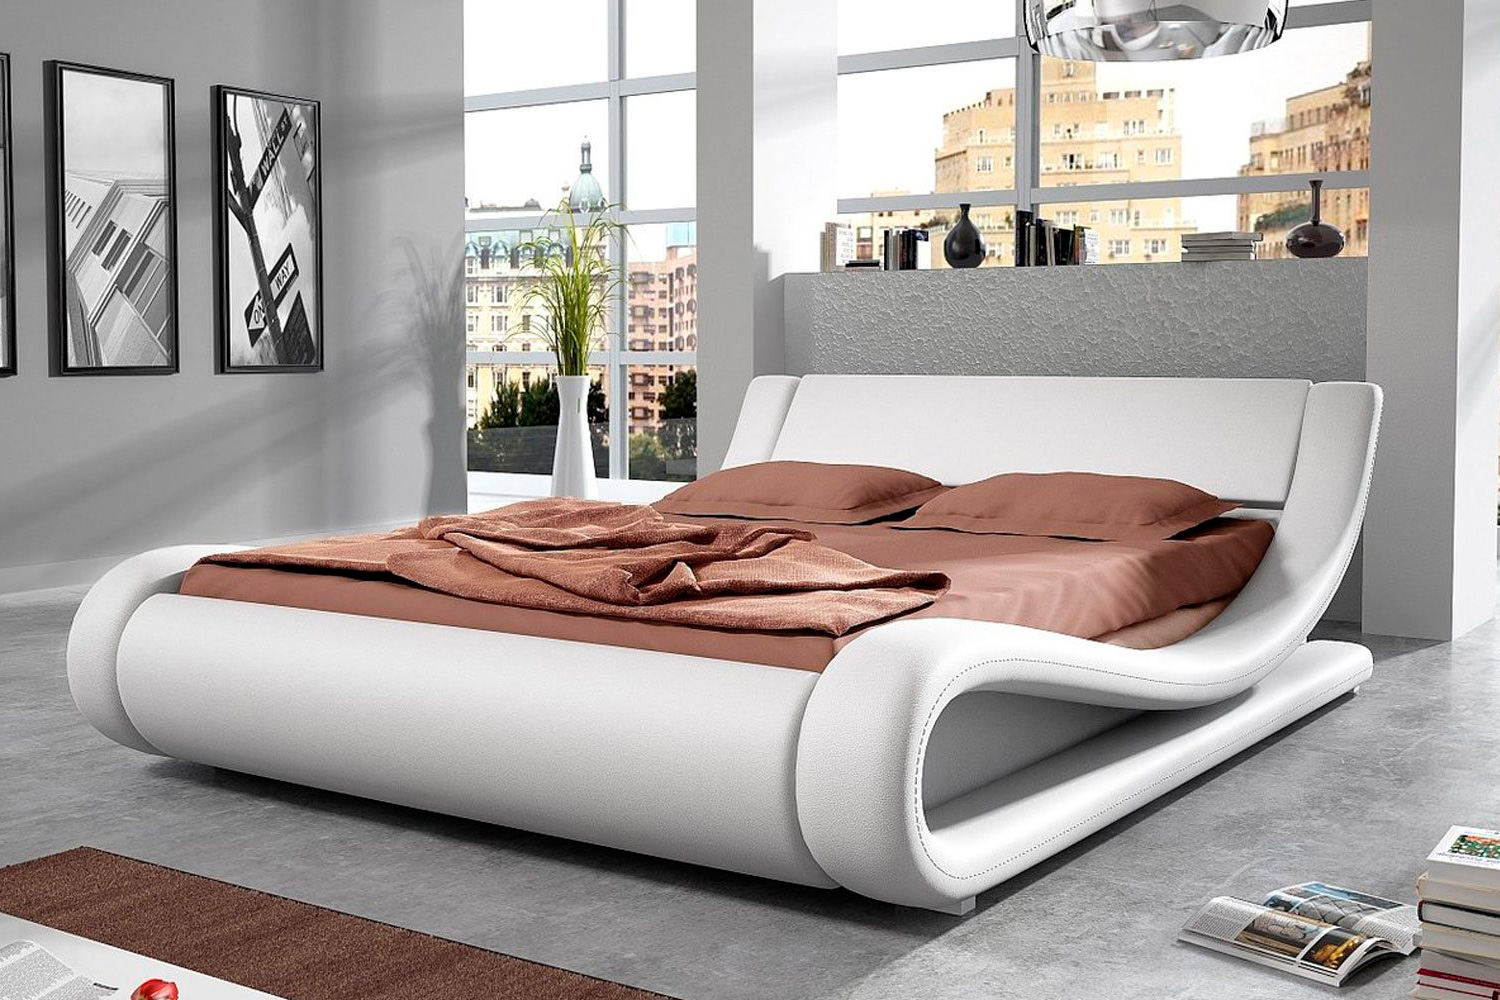 Двуспальная кровать, как сделать правильный выбор?